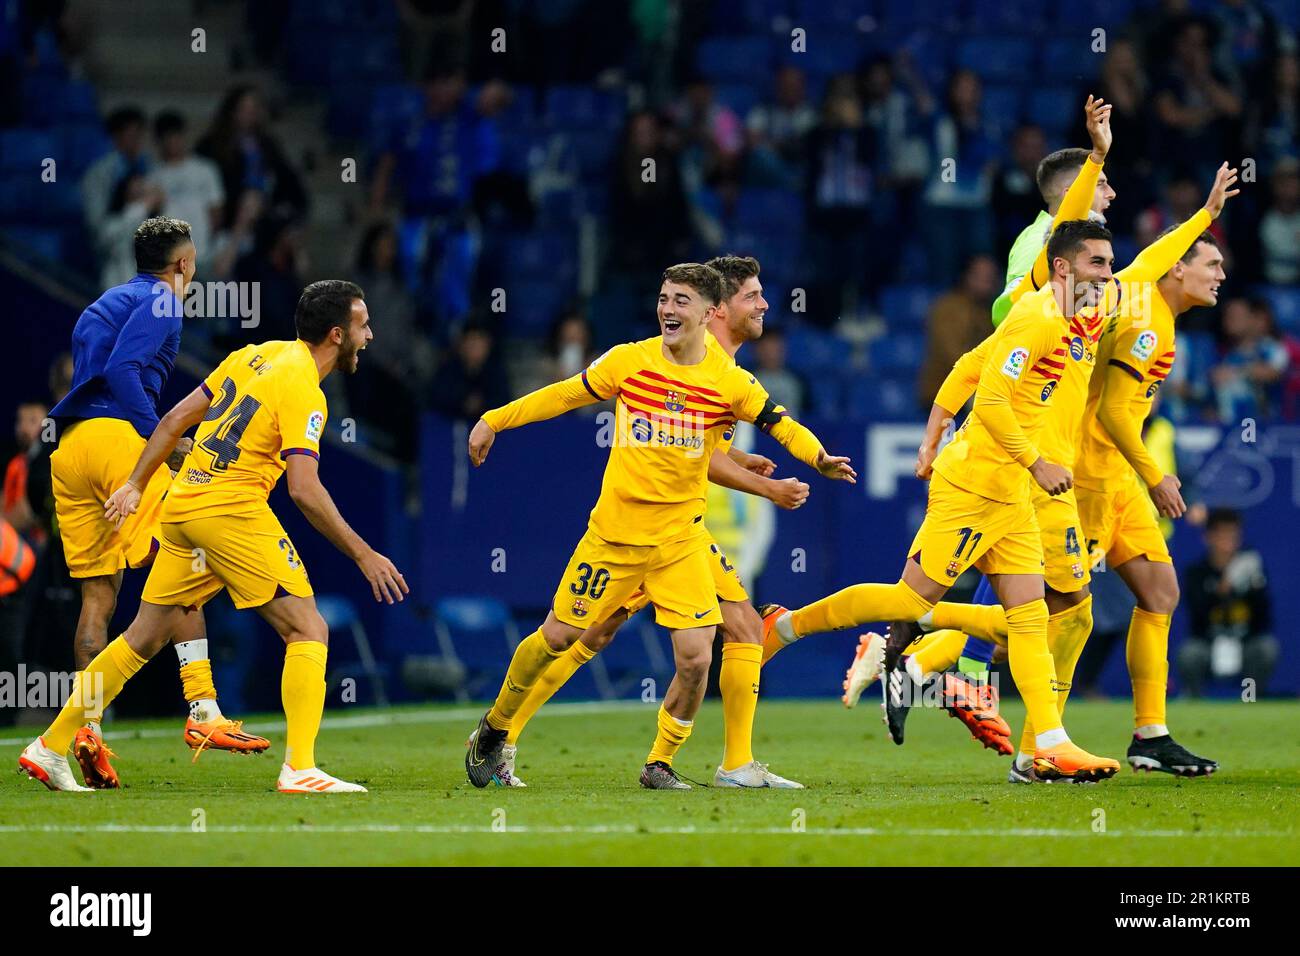 Los aficionados del RCD Espanyol celebraron la victoria durante el